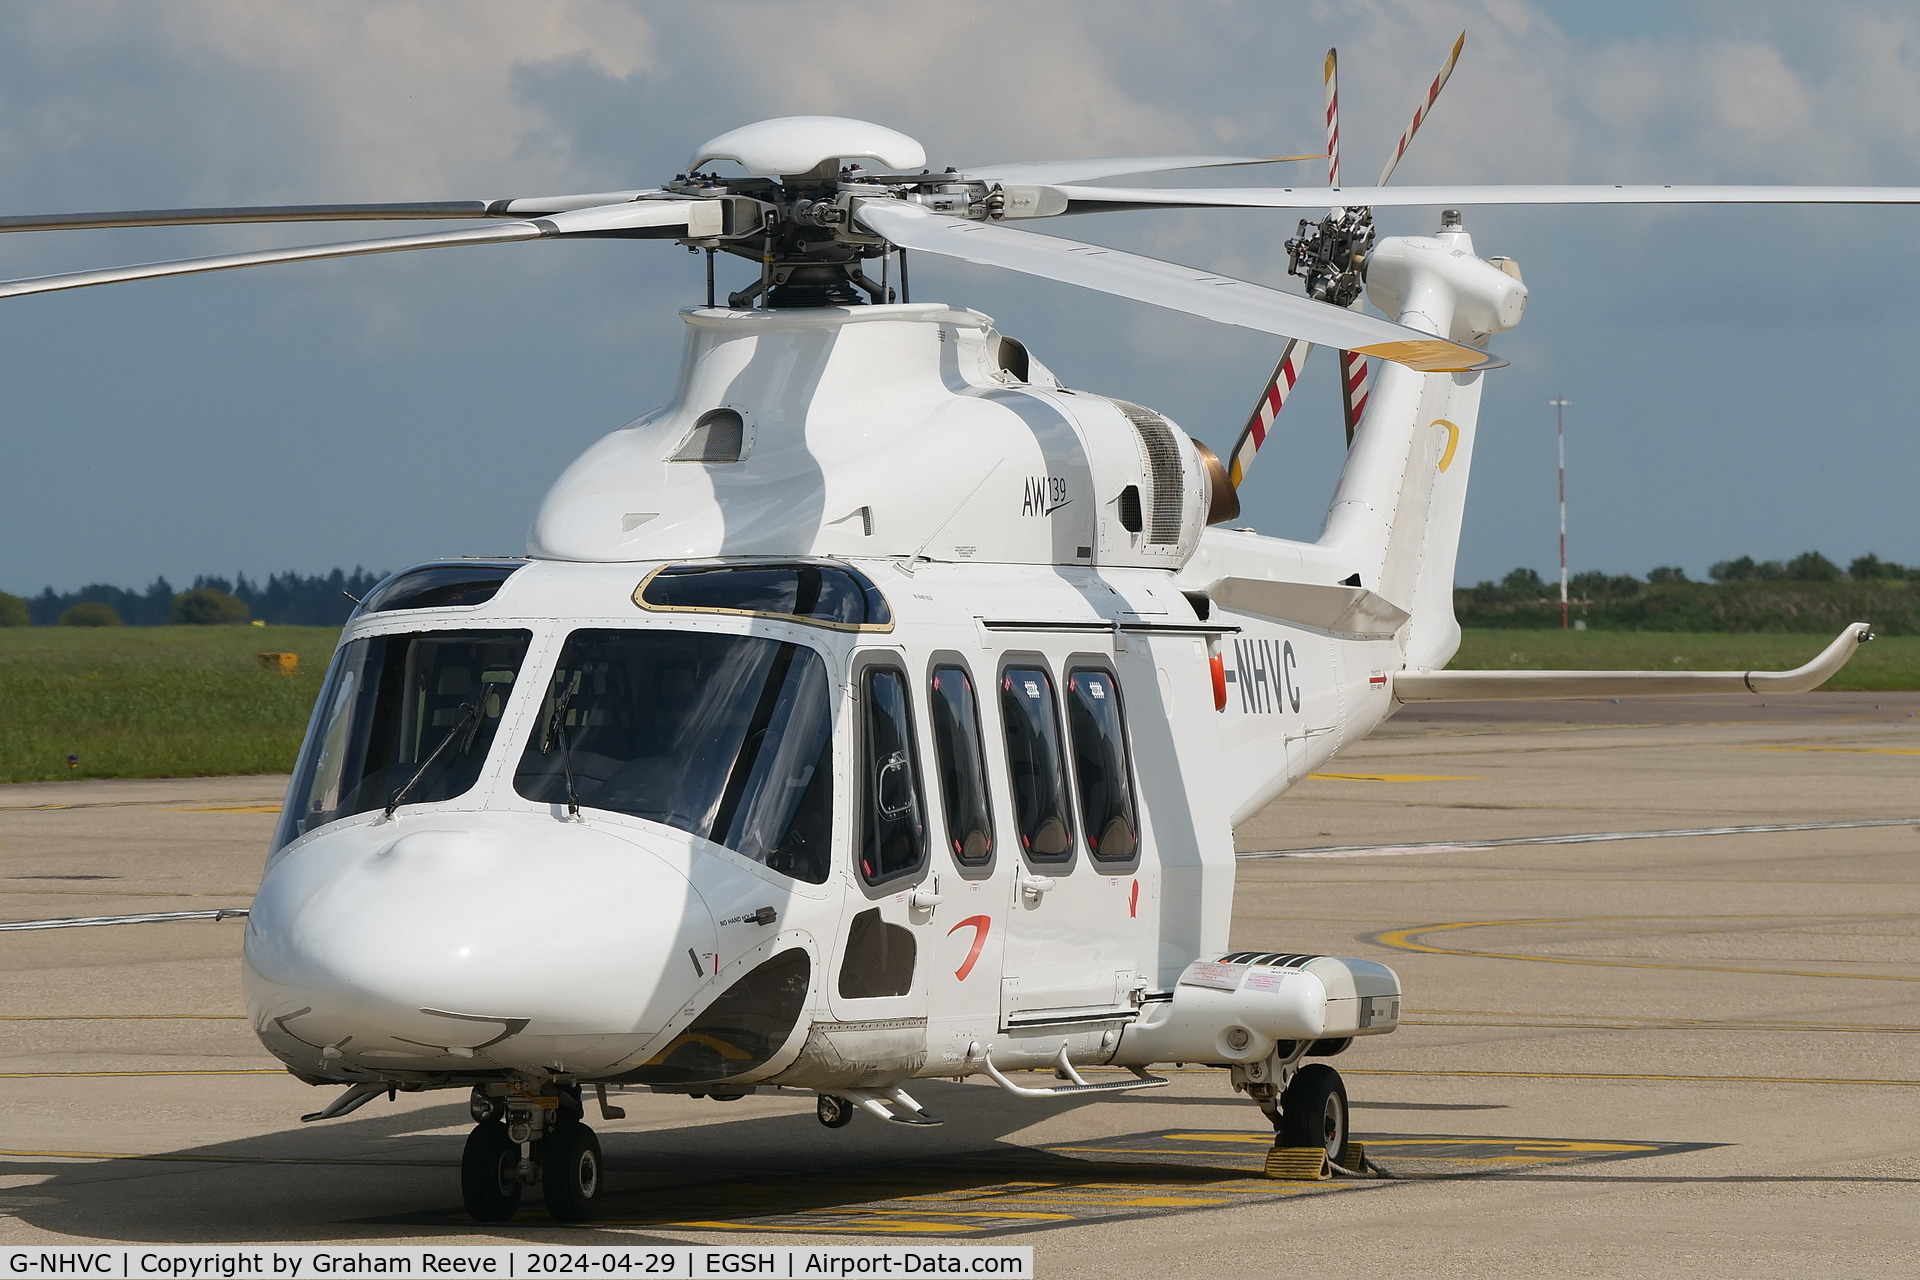 G-NHVC, 2015 AgustaWestland AW-139 C/N 31704, Parked at Norwich.